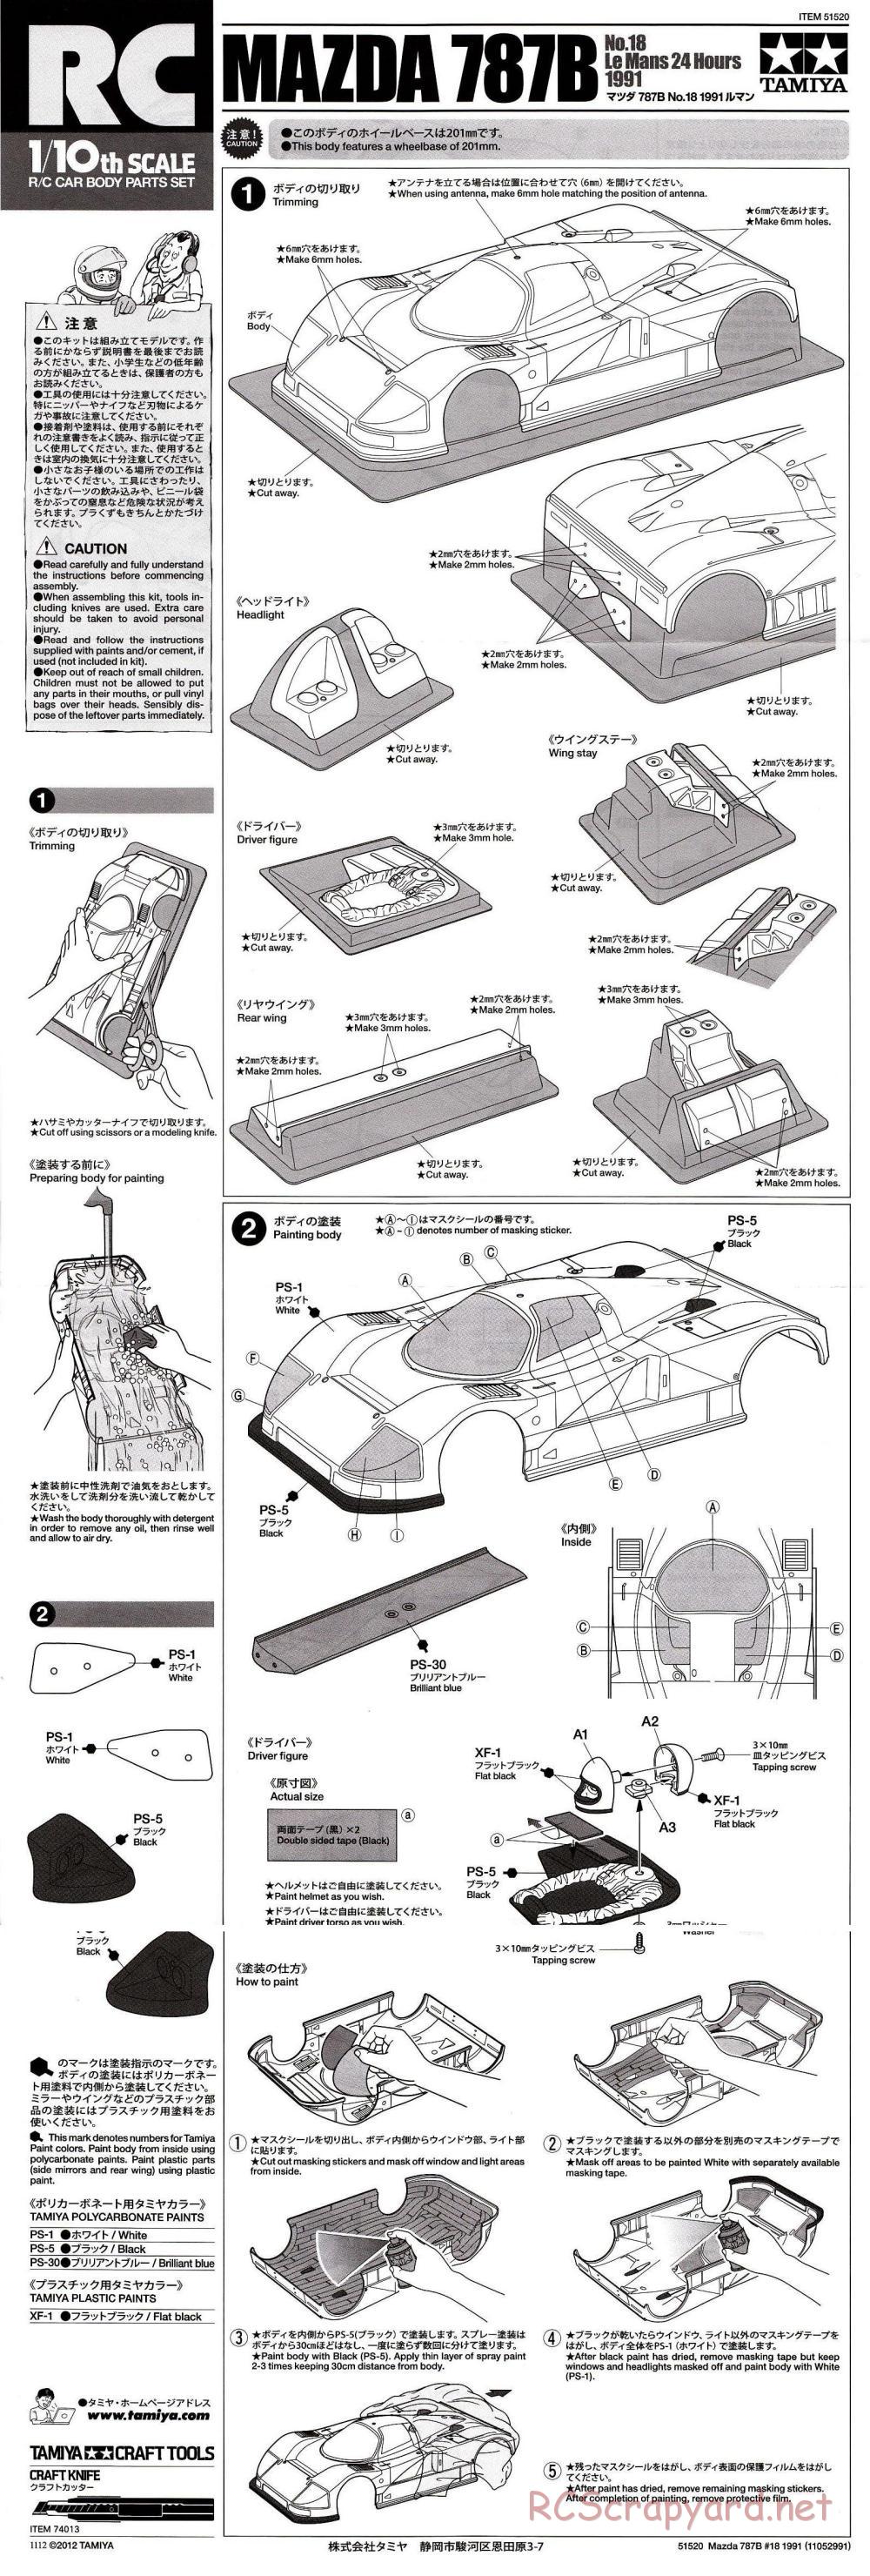 Tamiya - Mazda 787B No.18 Le-Mans 1991 - RM-01 Chassis - Body Manual - Page 1